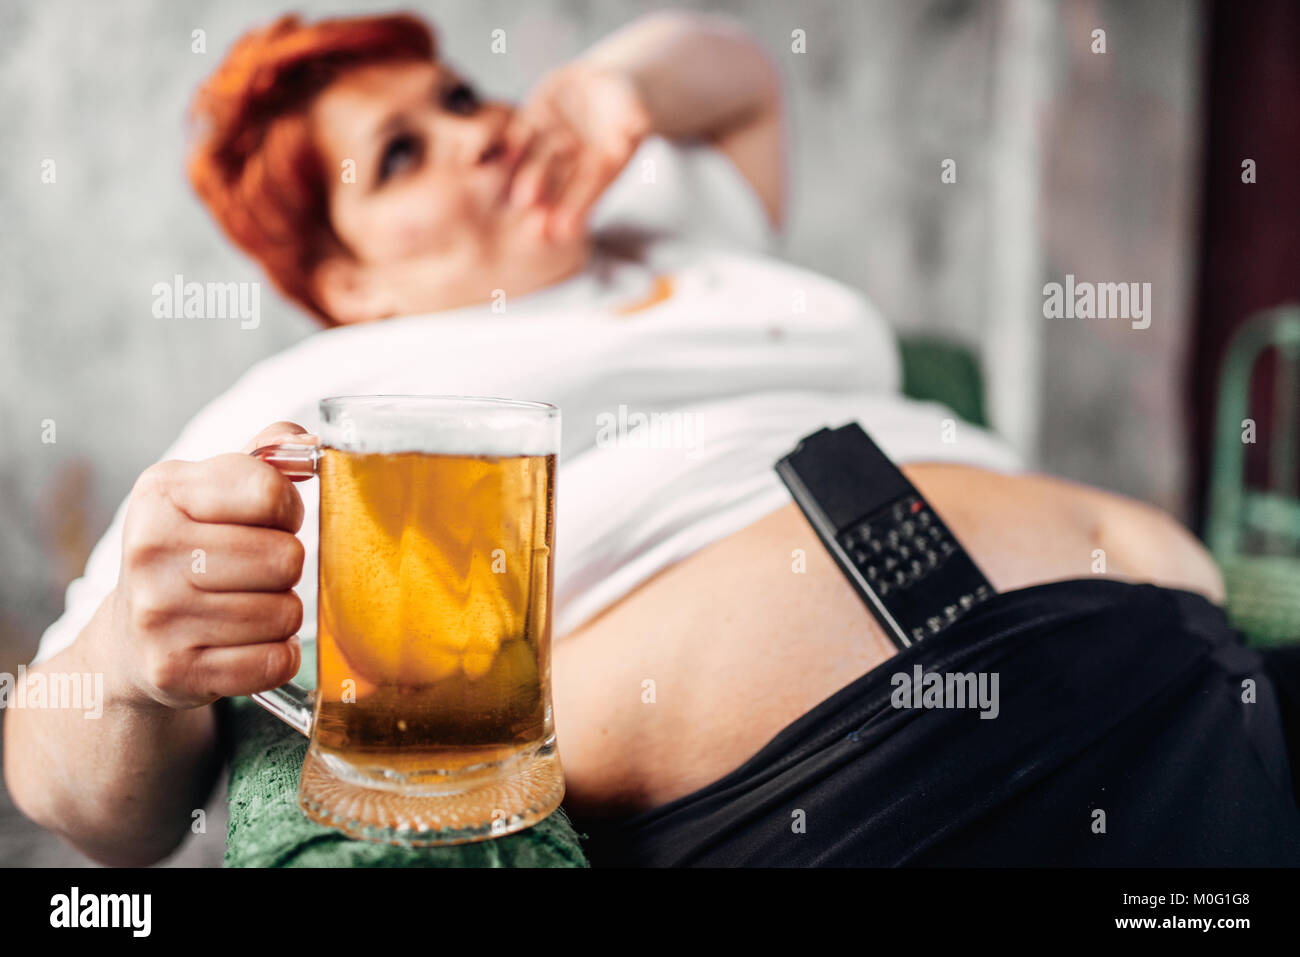 Donna sovrappeso con un bicchiere di birra in mano, obesità. Uno stile di vita poco salutare, femmina grassi Foto Stock